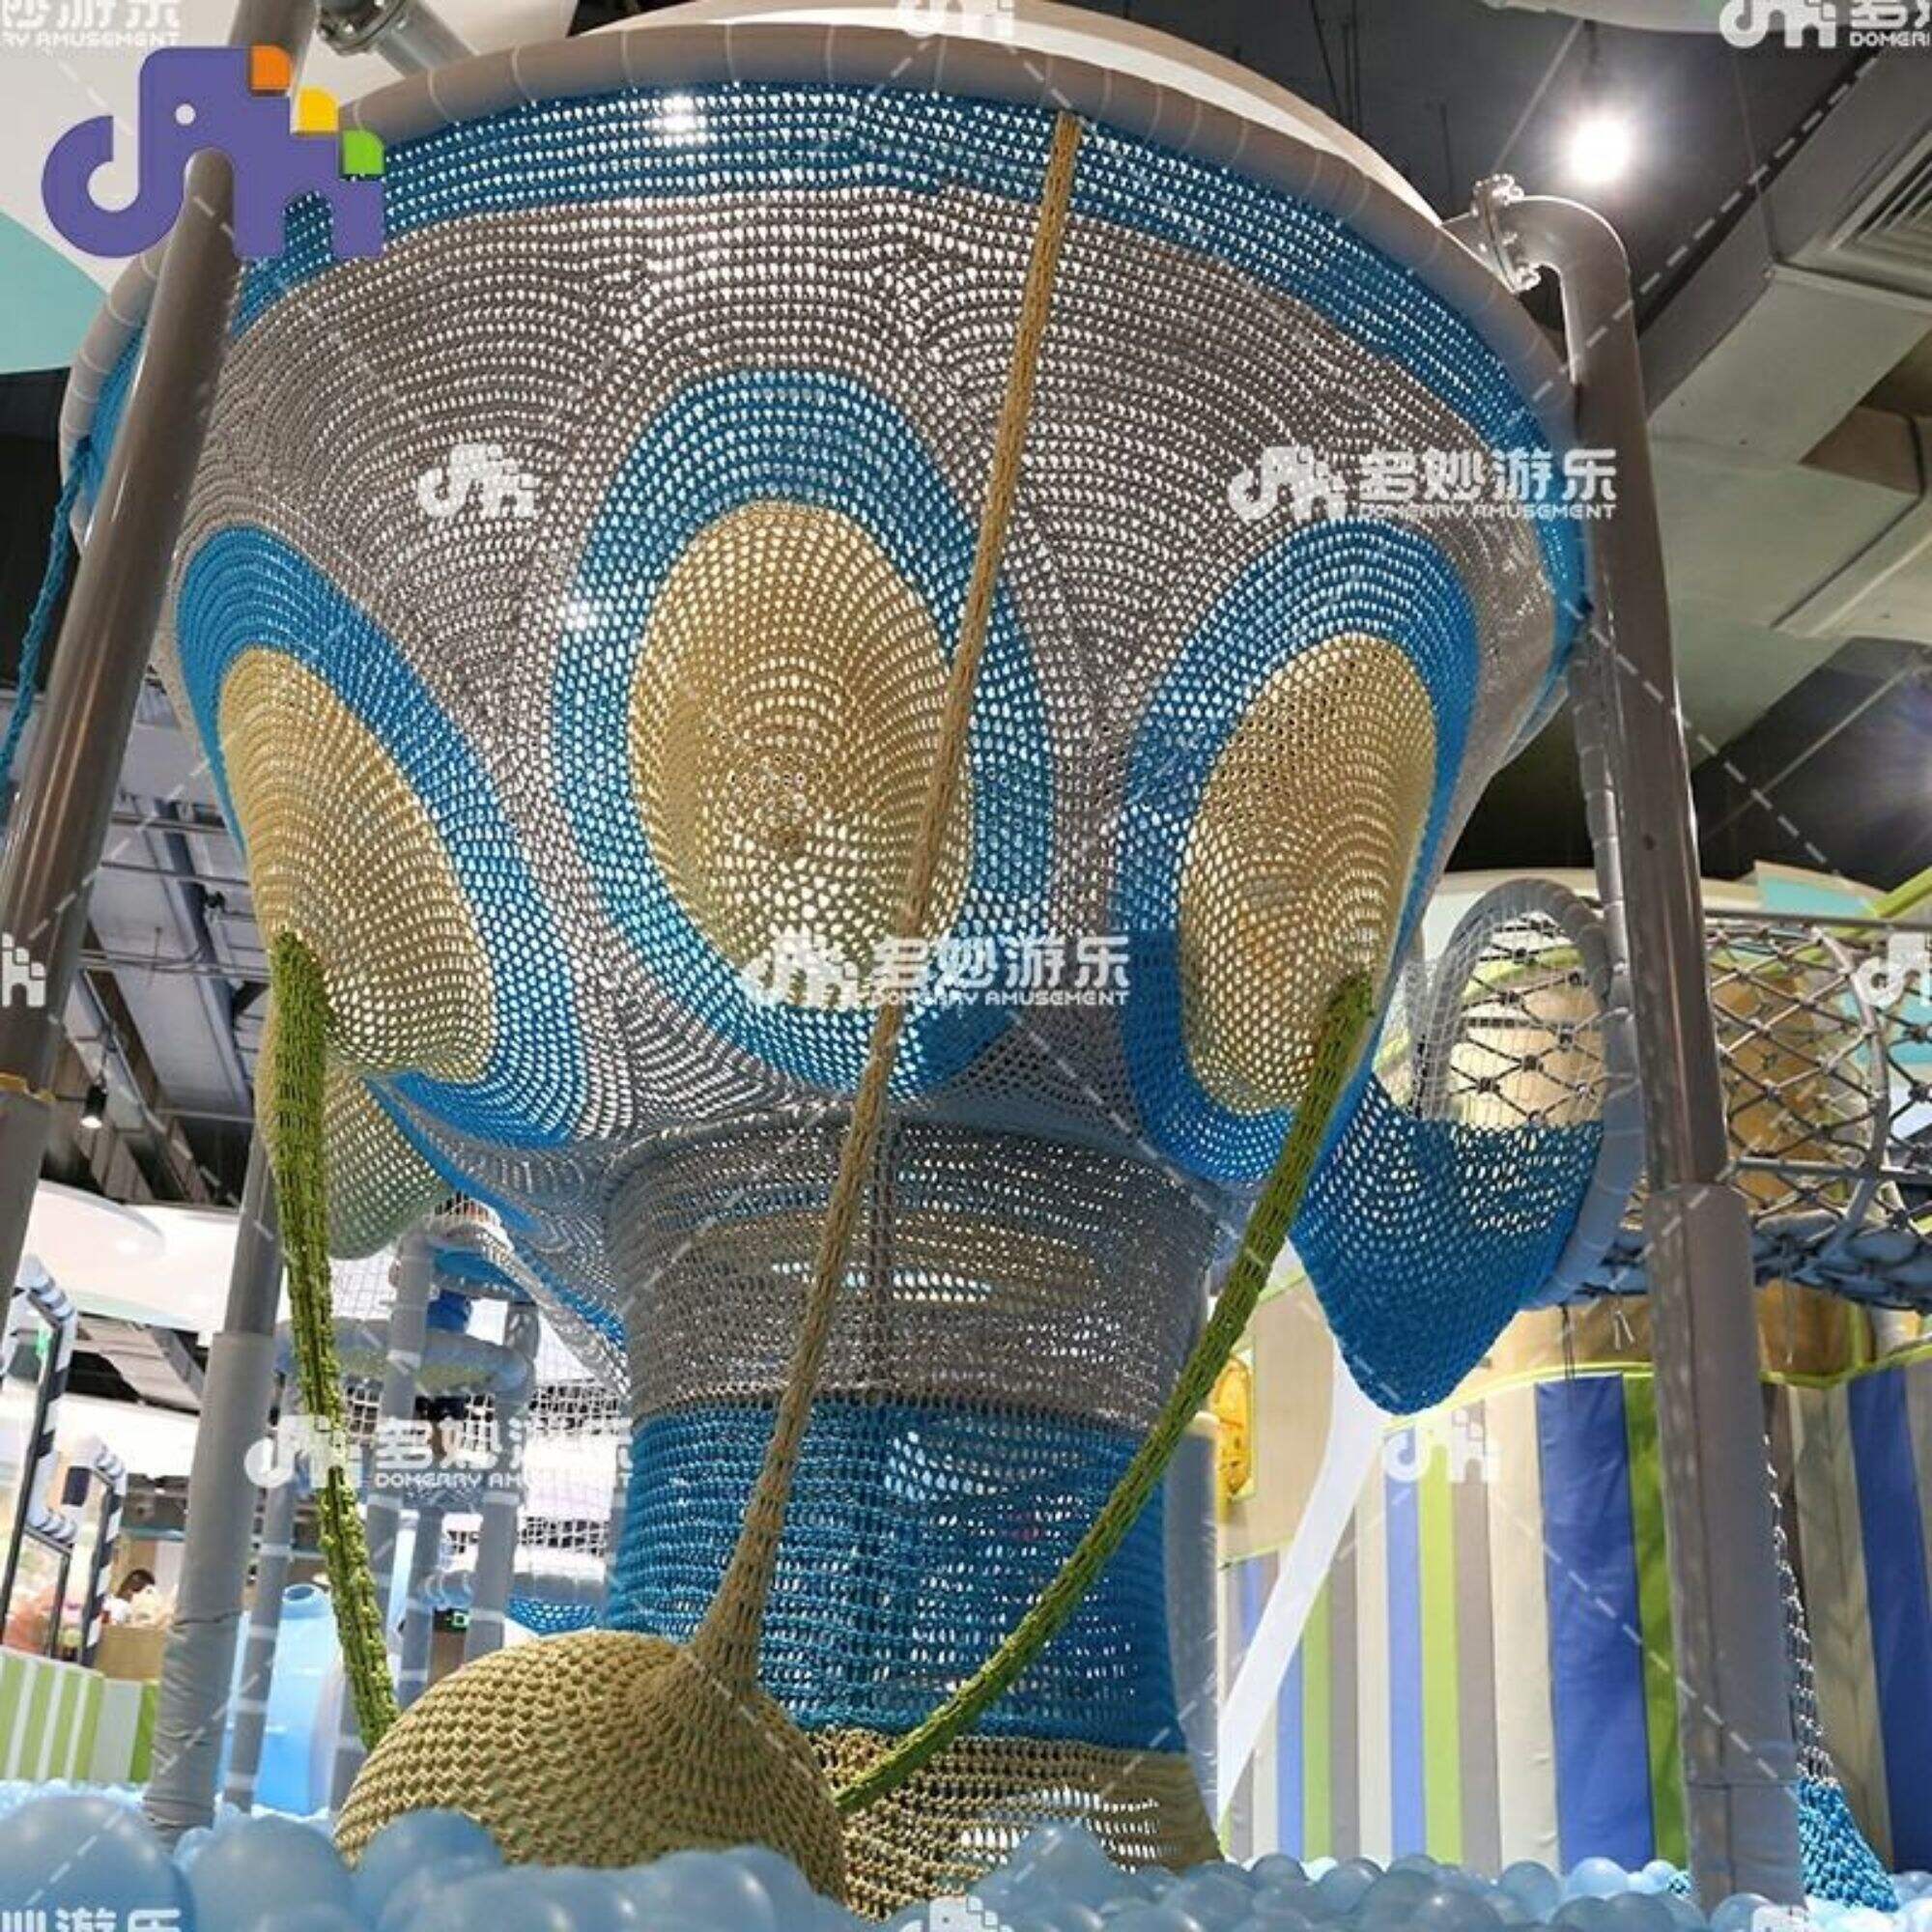 Plasa de alpinism comercial personalizata pentru paianjen pentru copii, echipament pentru parc de distractii de interior